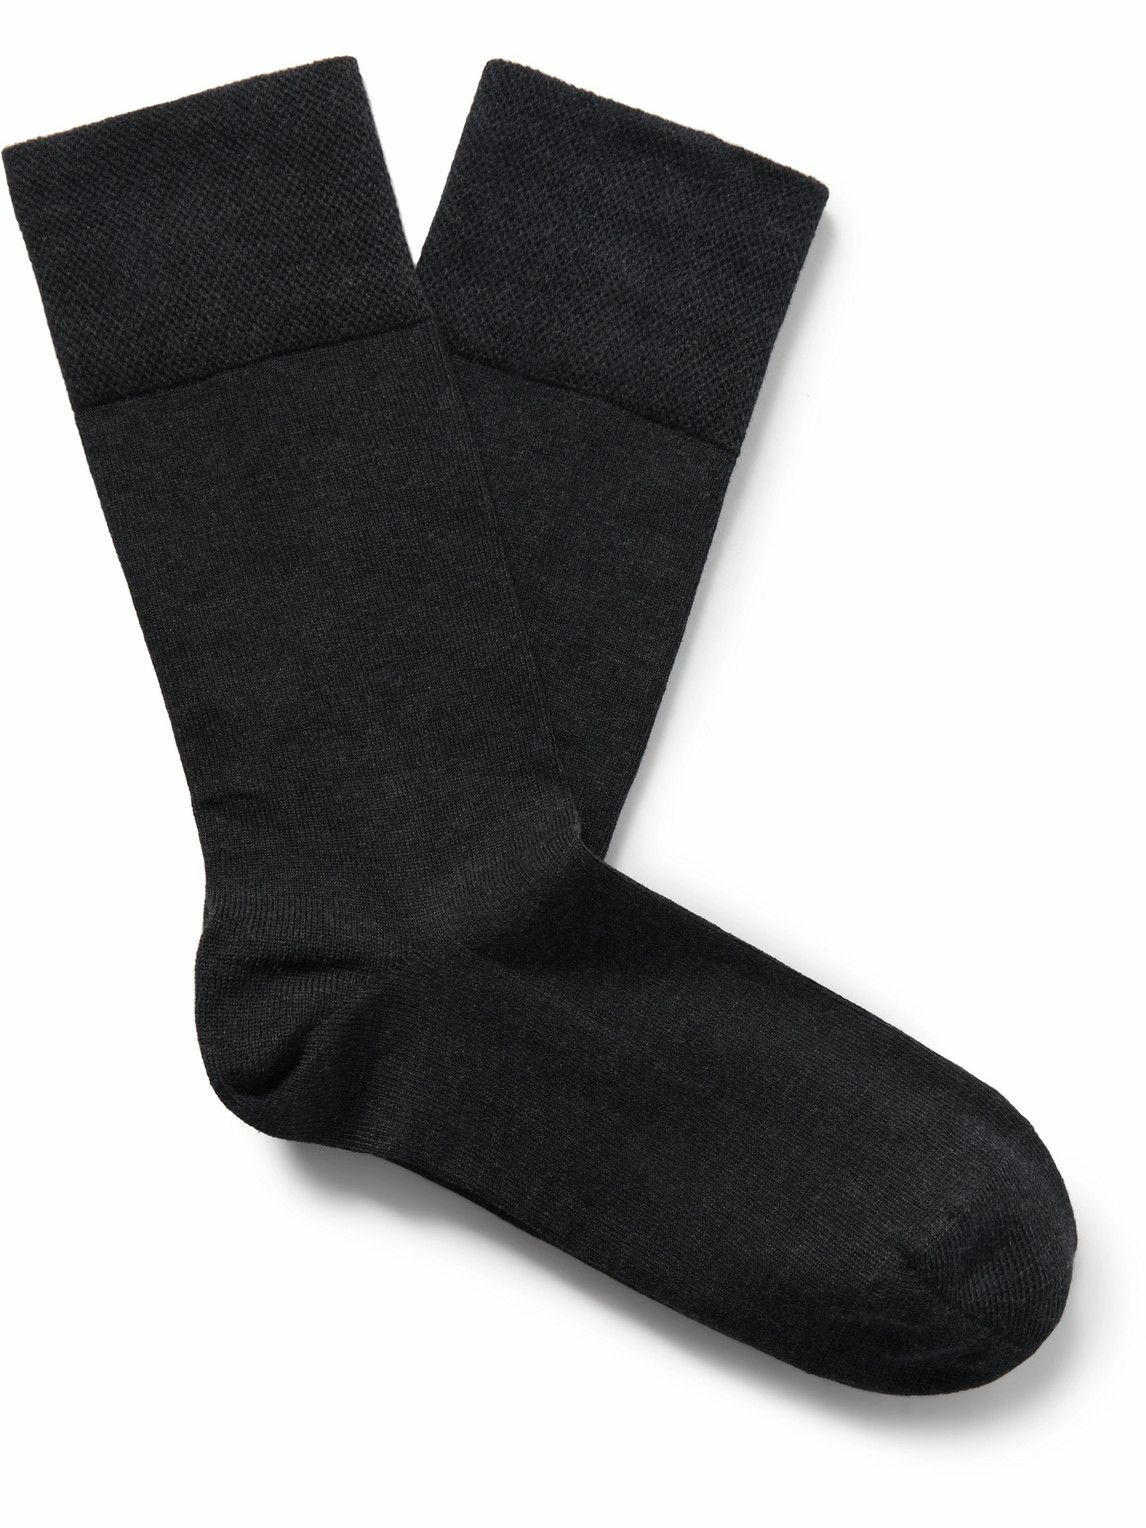 Falke - Sensitive London Cotton-Blend Socks - Gray FALKE Ergonomic ...